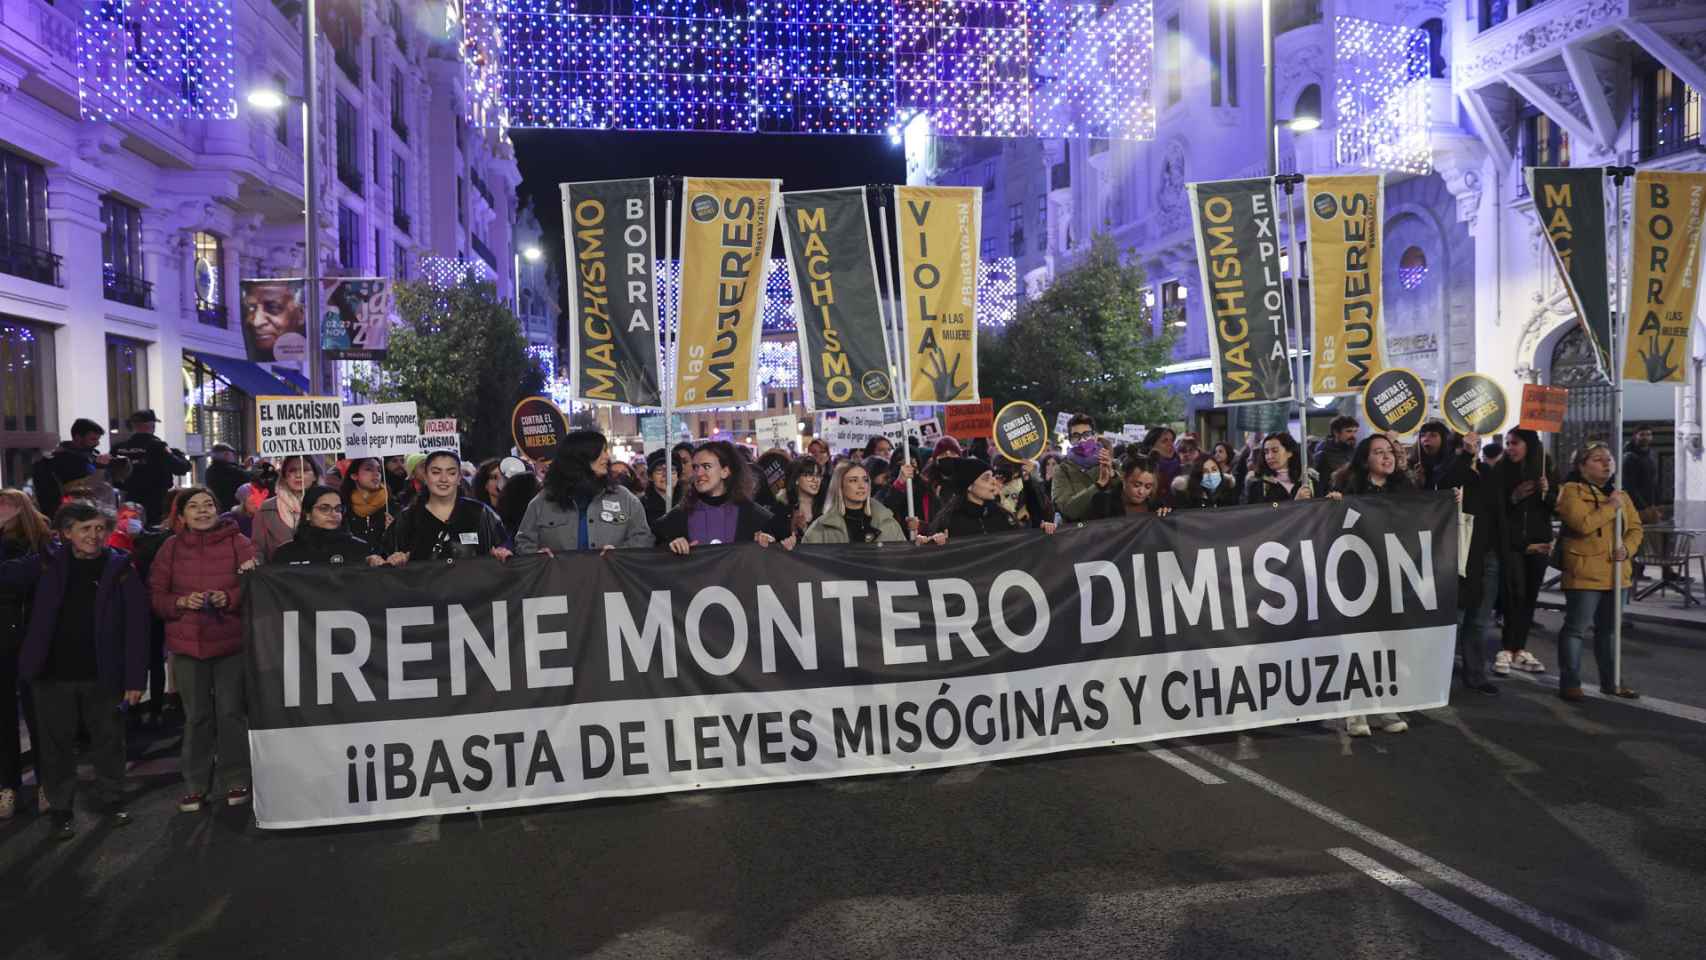 Una pancarta de Irene Montero dimisión en la manifestación feminista celebrada el pasado 8-M en Madrid.